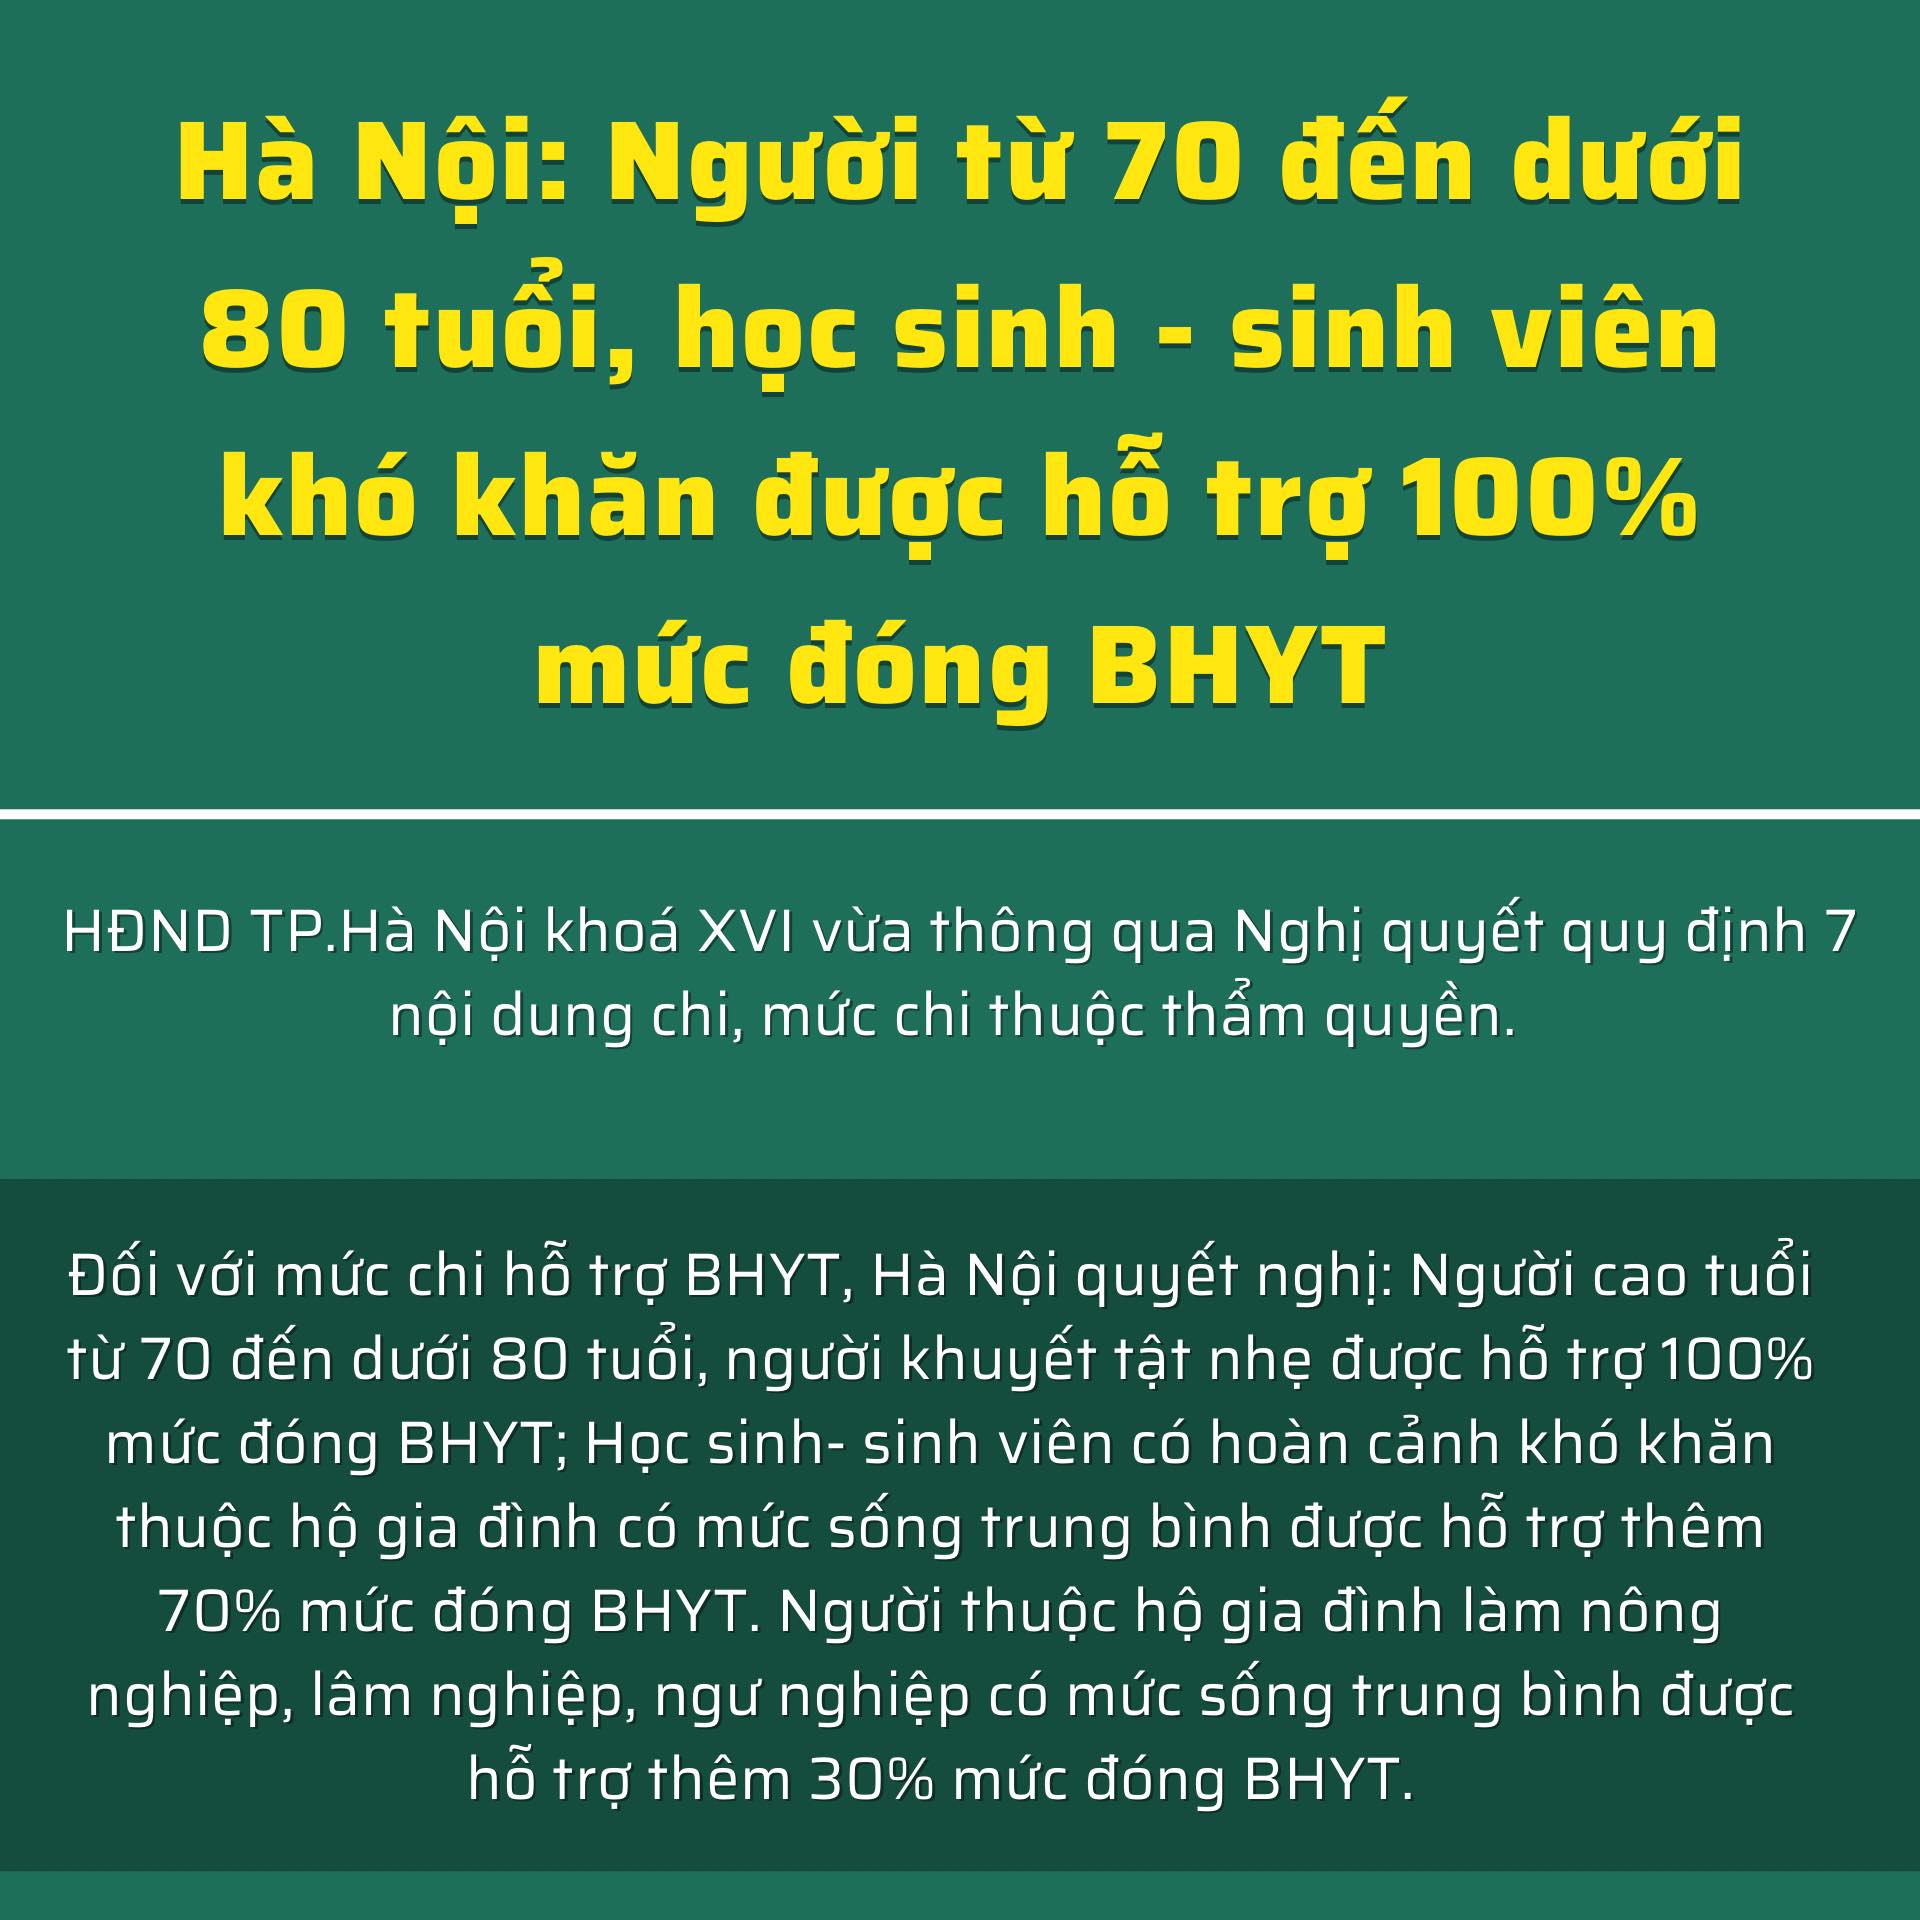 Cover Image for Hà Nội Chấp Tay Hỗ Trợ: Người từ 70 đến dưới 80 tuổi, học sinh – sinh viên khó khăn được hỗ trợ 100% mức đóng BHYT